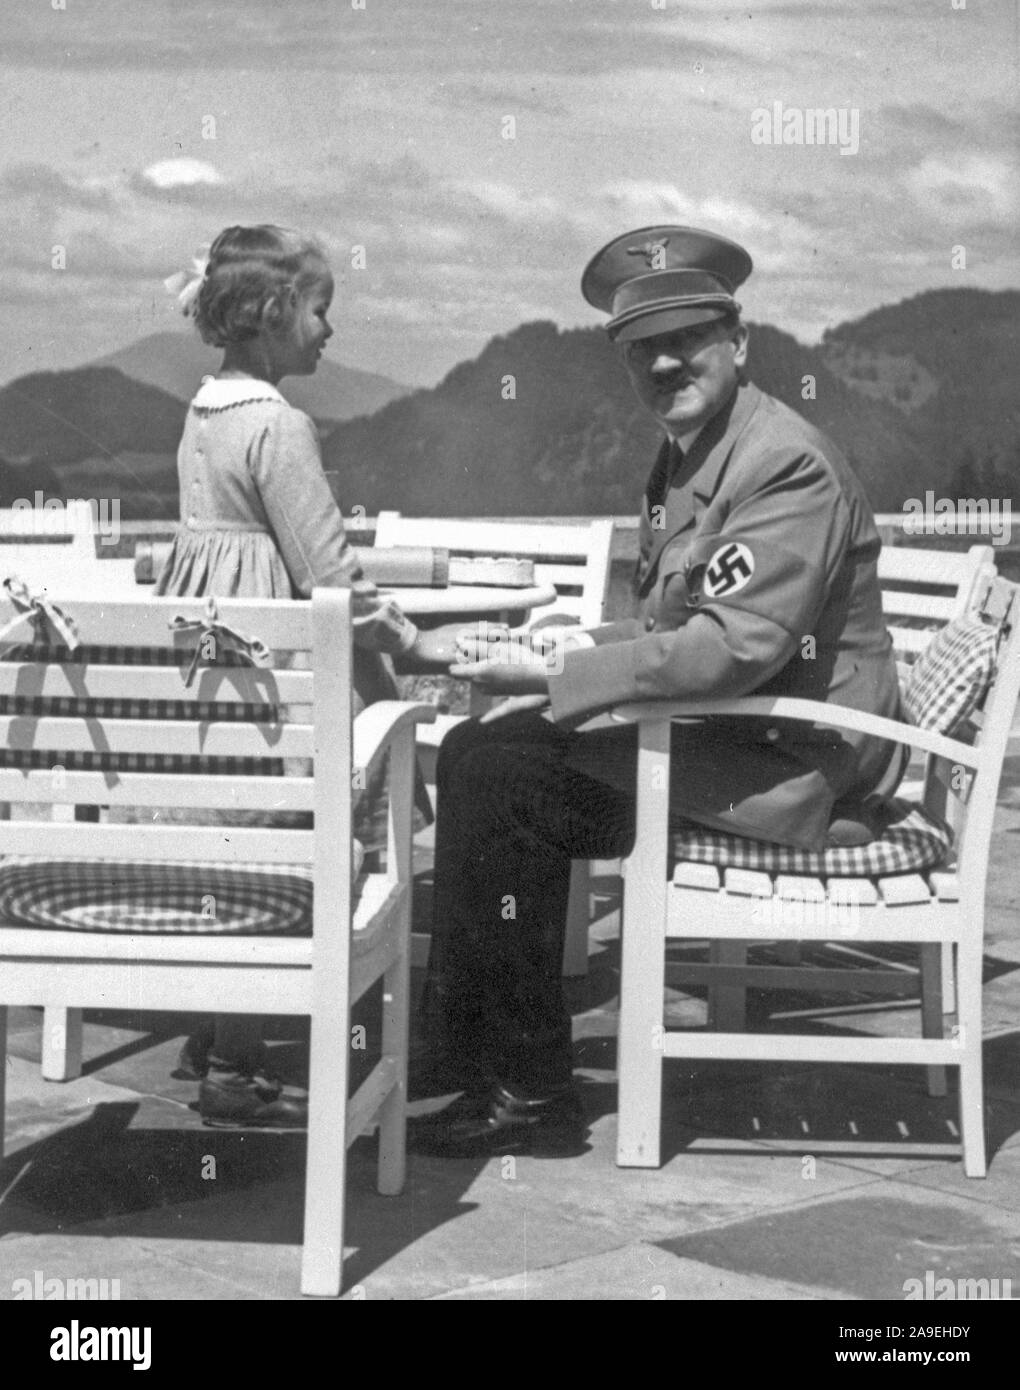 Eva Braun Sammlung (dvadvadaset) - Adolf Hitler mit kleinen Mädchen Ca. 1930s oder 1940s Stockfoto